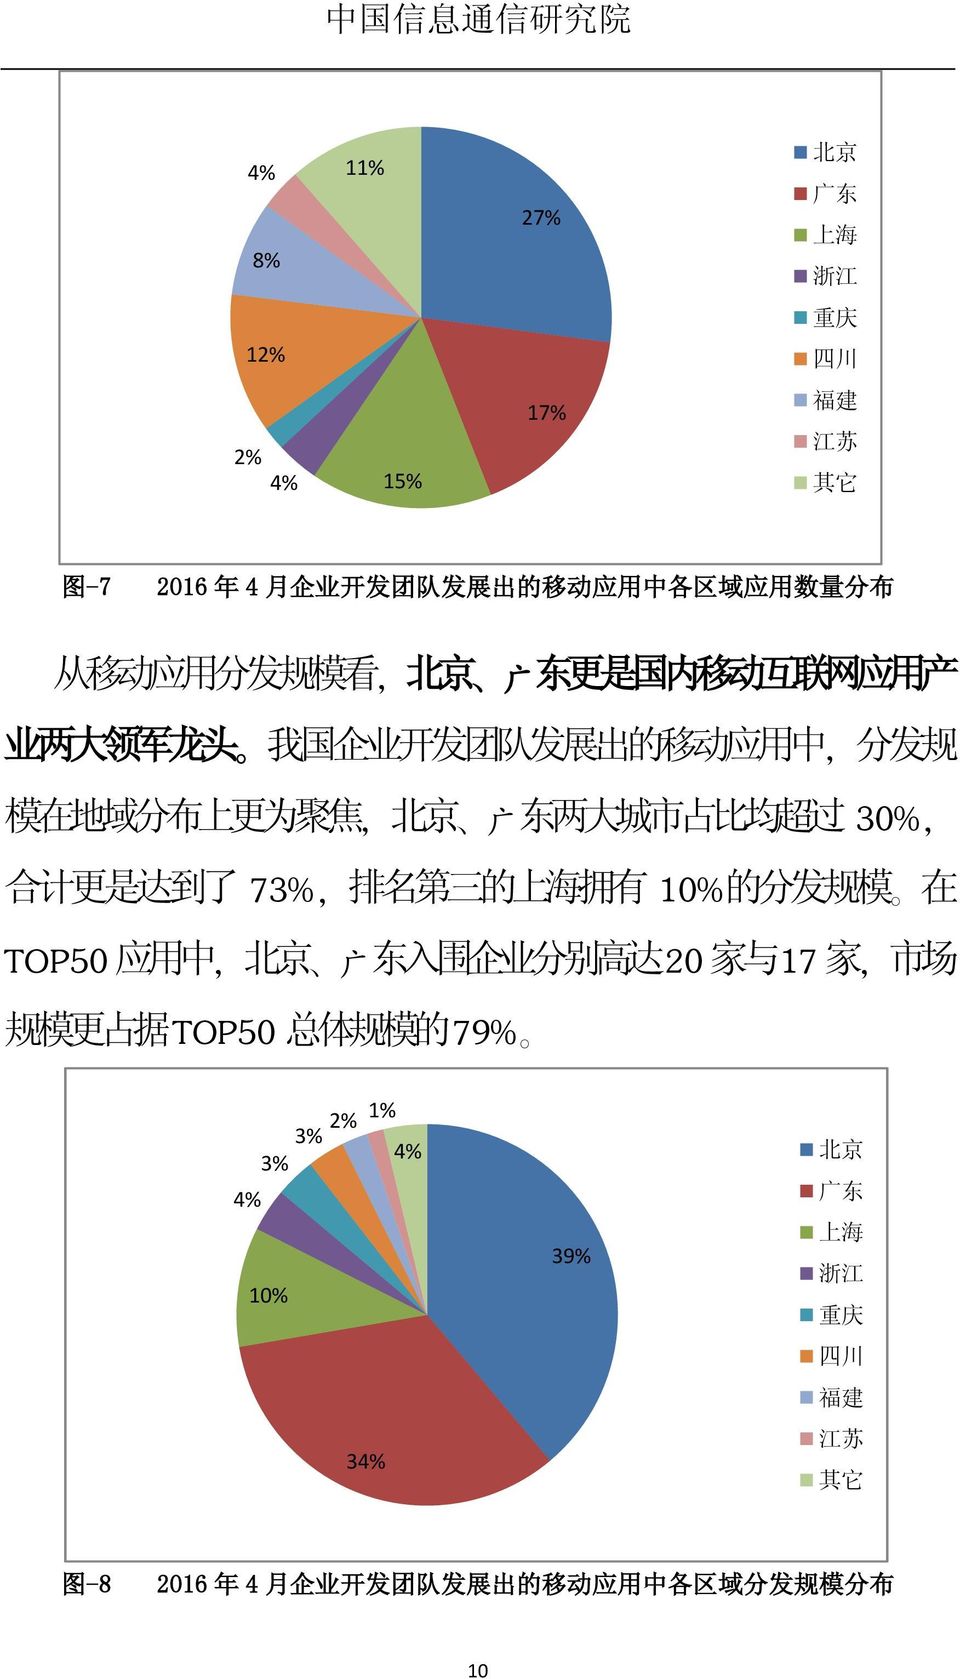 均 超 过, 广 30%, 合 计 更 是 达 到 了 73%, 排 名 第 三 的 上 海 拥 有 10% 的 分 发 规 模 在 TOP50 应 用 中, 北 京 广 东 入 围 企 业 分 别 高 达 20 家 与 17 家, 市 场 规 模 更 占 据 TOP50 总 体